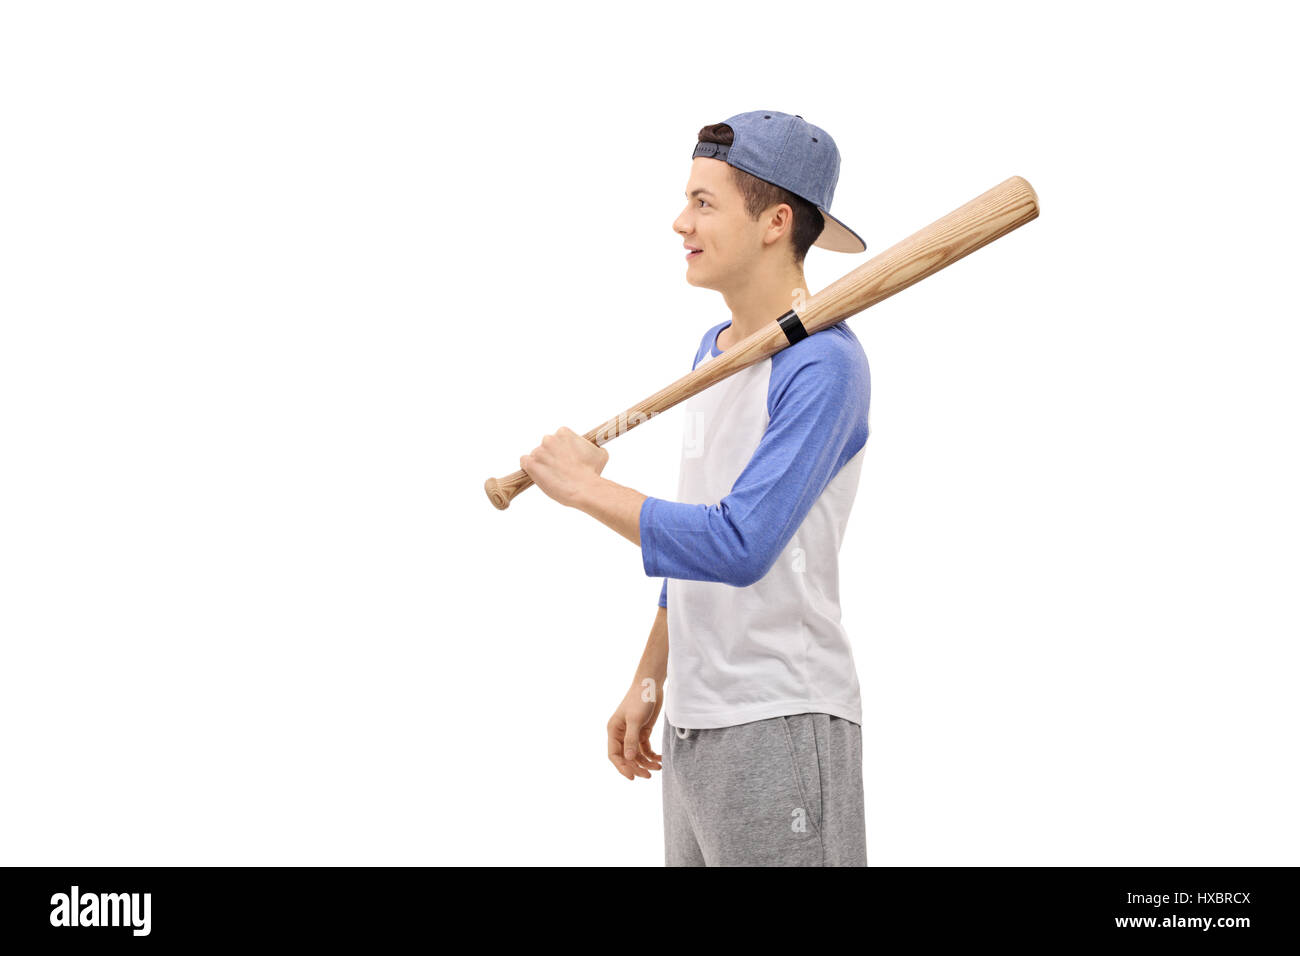 Profil-Schuss eines Teenagers mit einem Baseballschläger und eine Kappe isoliert auf weißem Hintergrund Stockfoto